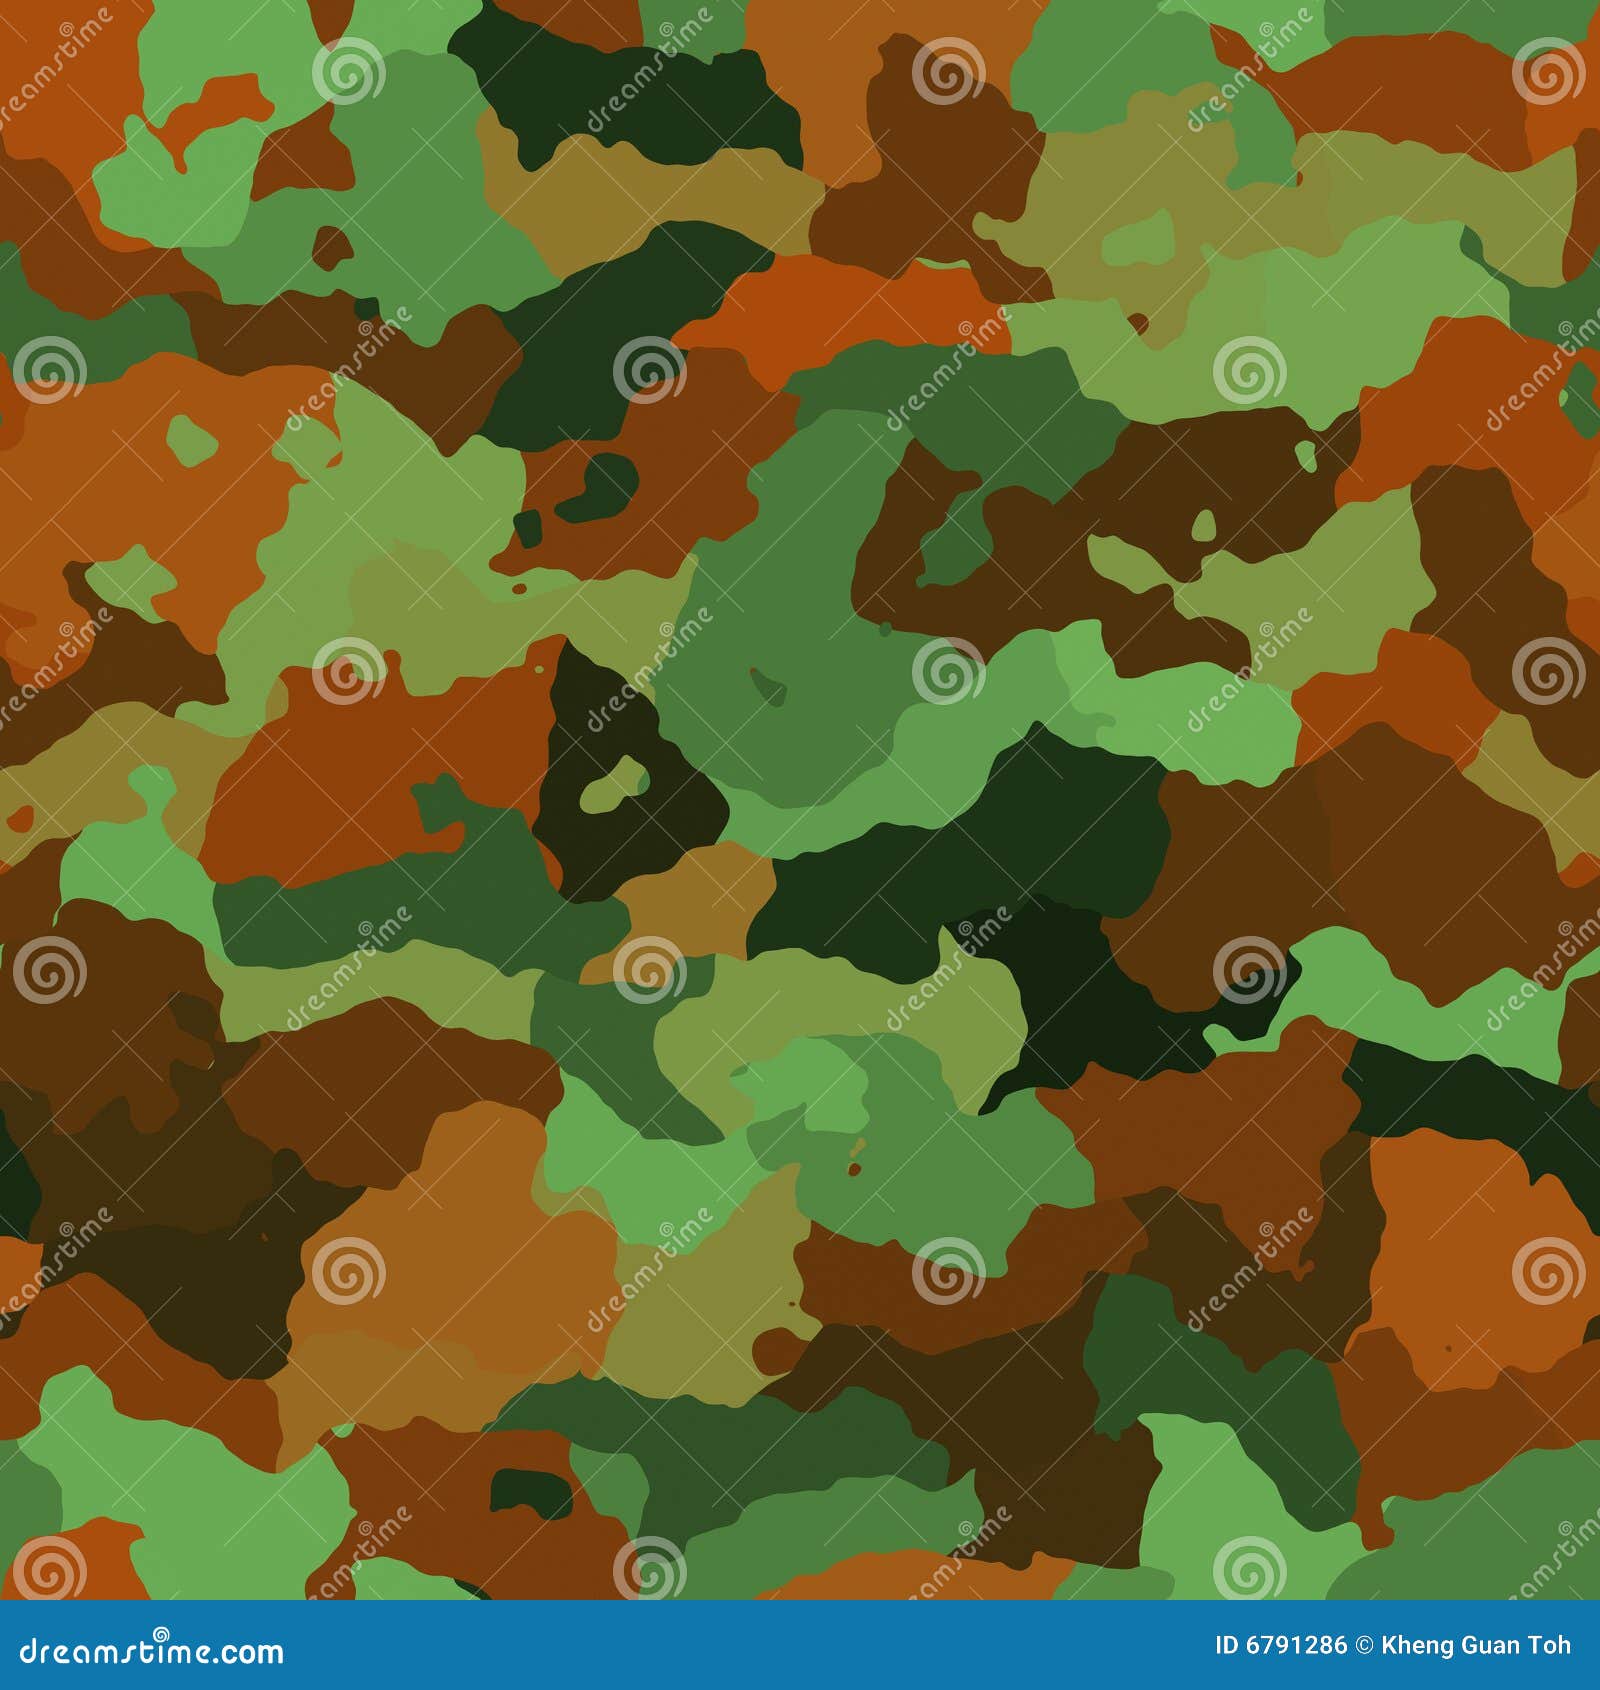 Camouflage pattern texture stock illustration. Illustration of seamless ...